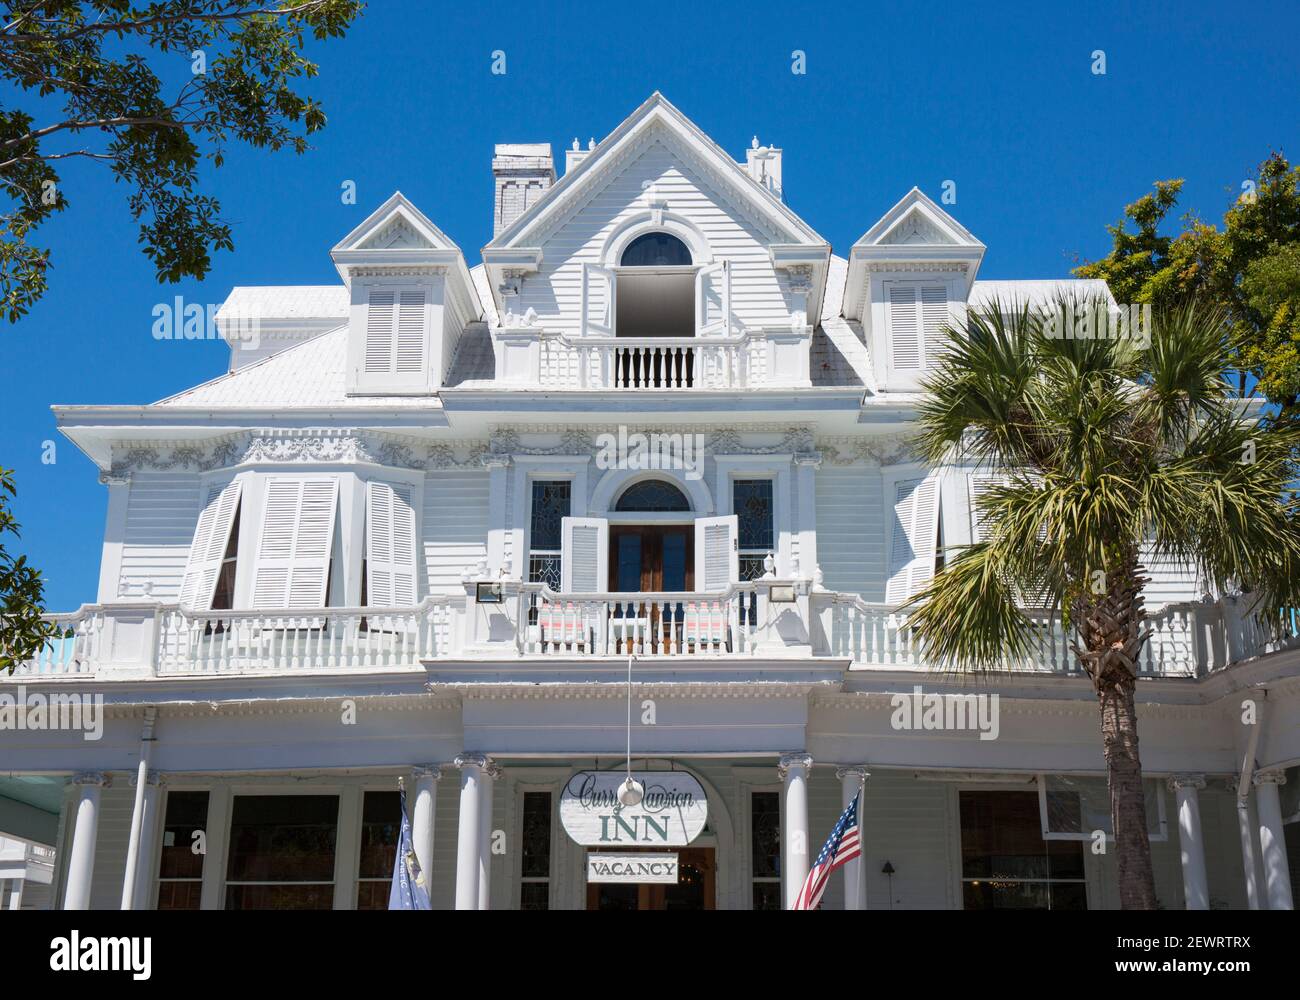 Brillante weiße Fassade des historischen Curry Mansion, jetzt ein Gästehaus, Altstadt, Key West, Florida Keys, Florida, Vereinigte Staaten von Amerika Stockfoto